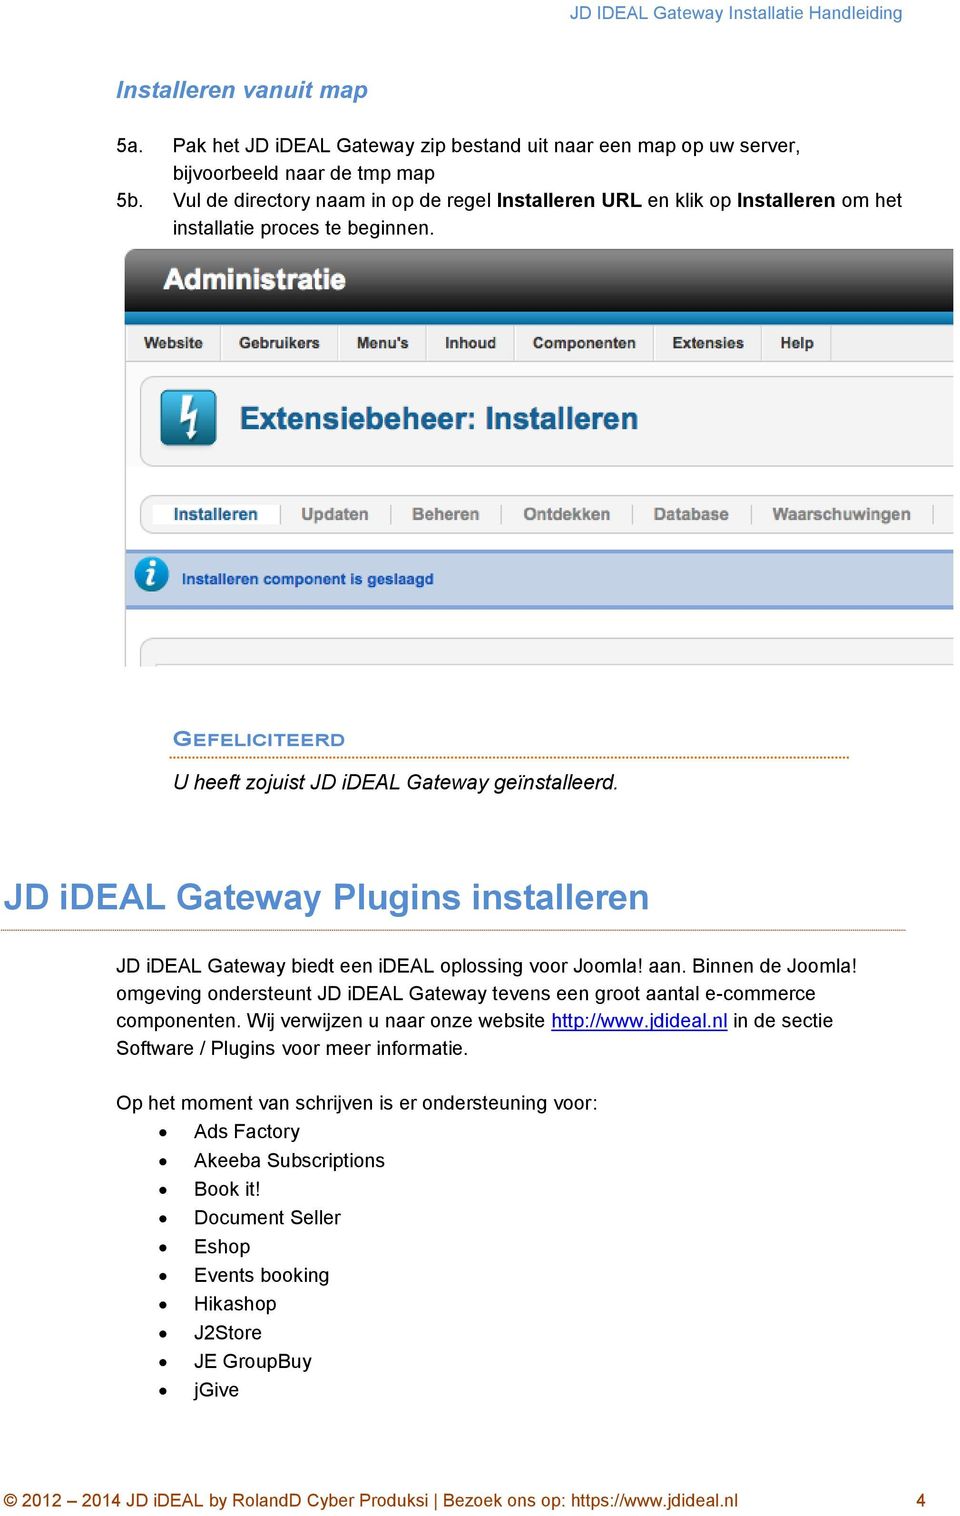 JD ideal Gateway Plugins installeren JD ideal Gateway biedt een ideal oplossing voor Joomla! aan. Binnen de Joomla!